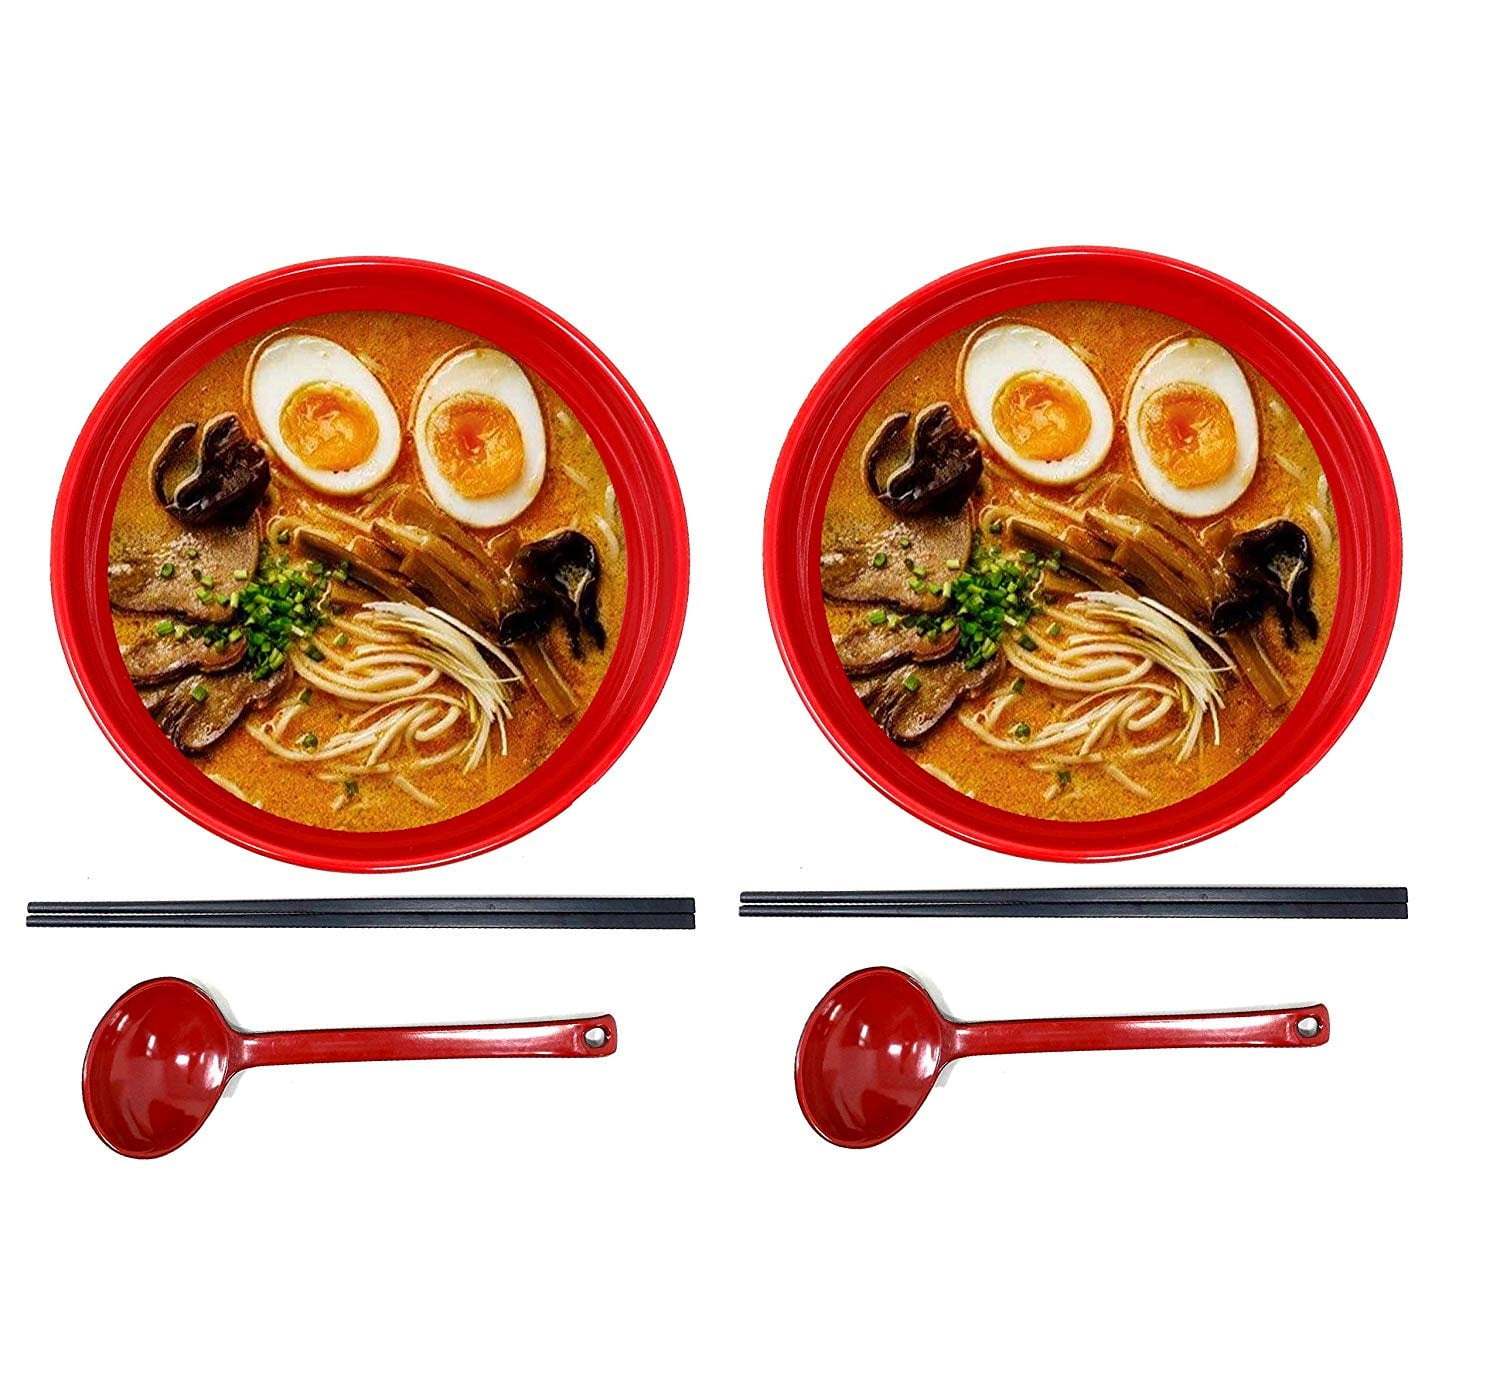 show original title Details about   Black Melamine Thicken Rice Ramen Noodles Soup Bowl Restaurant Dishes